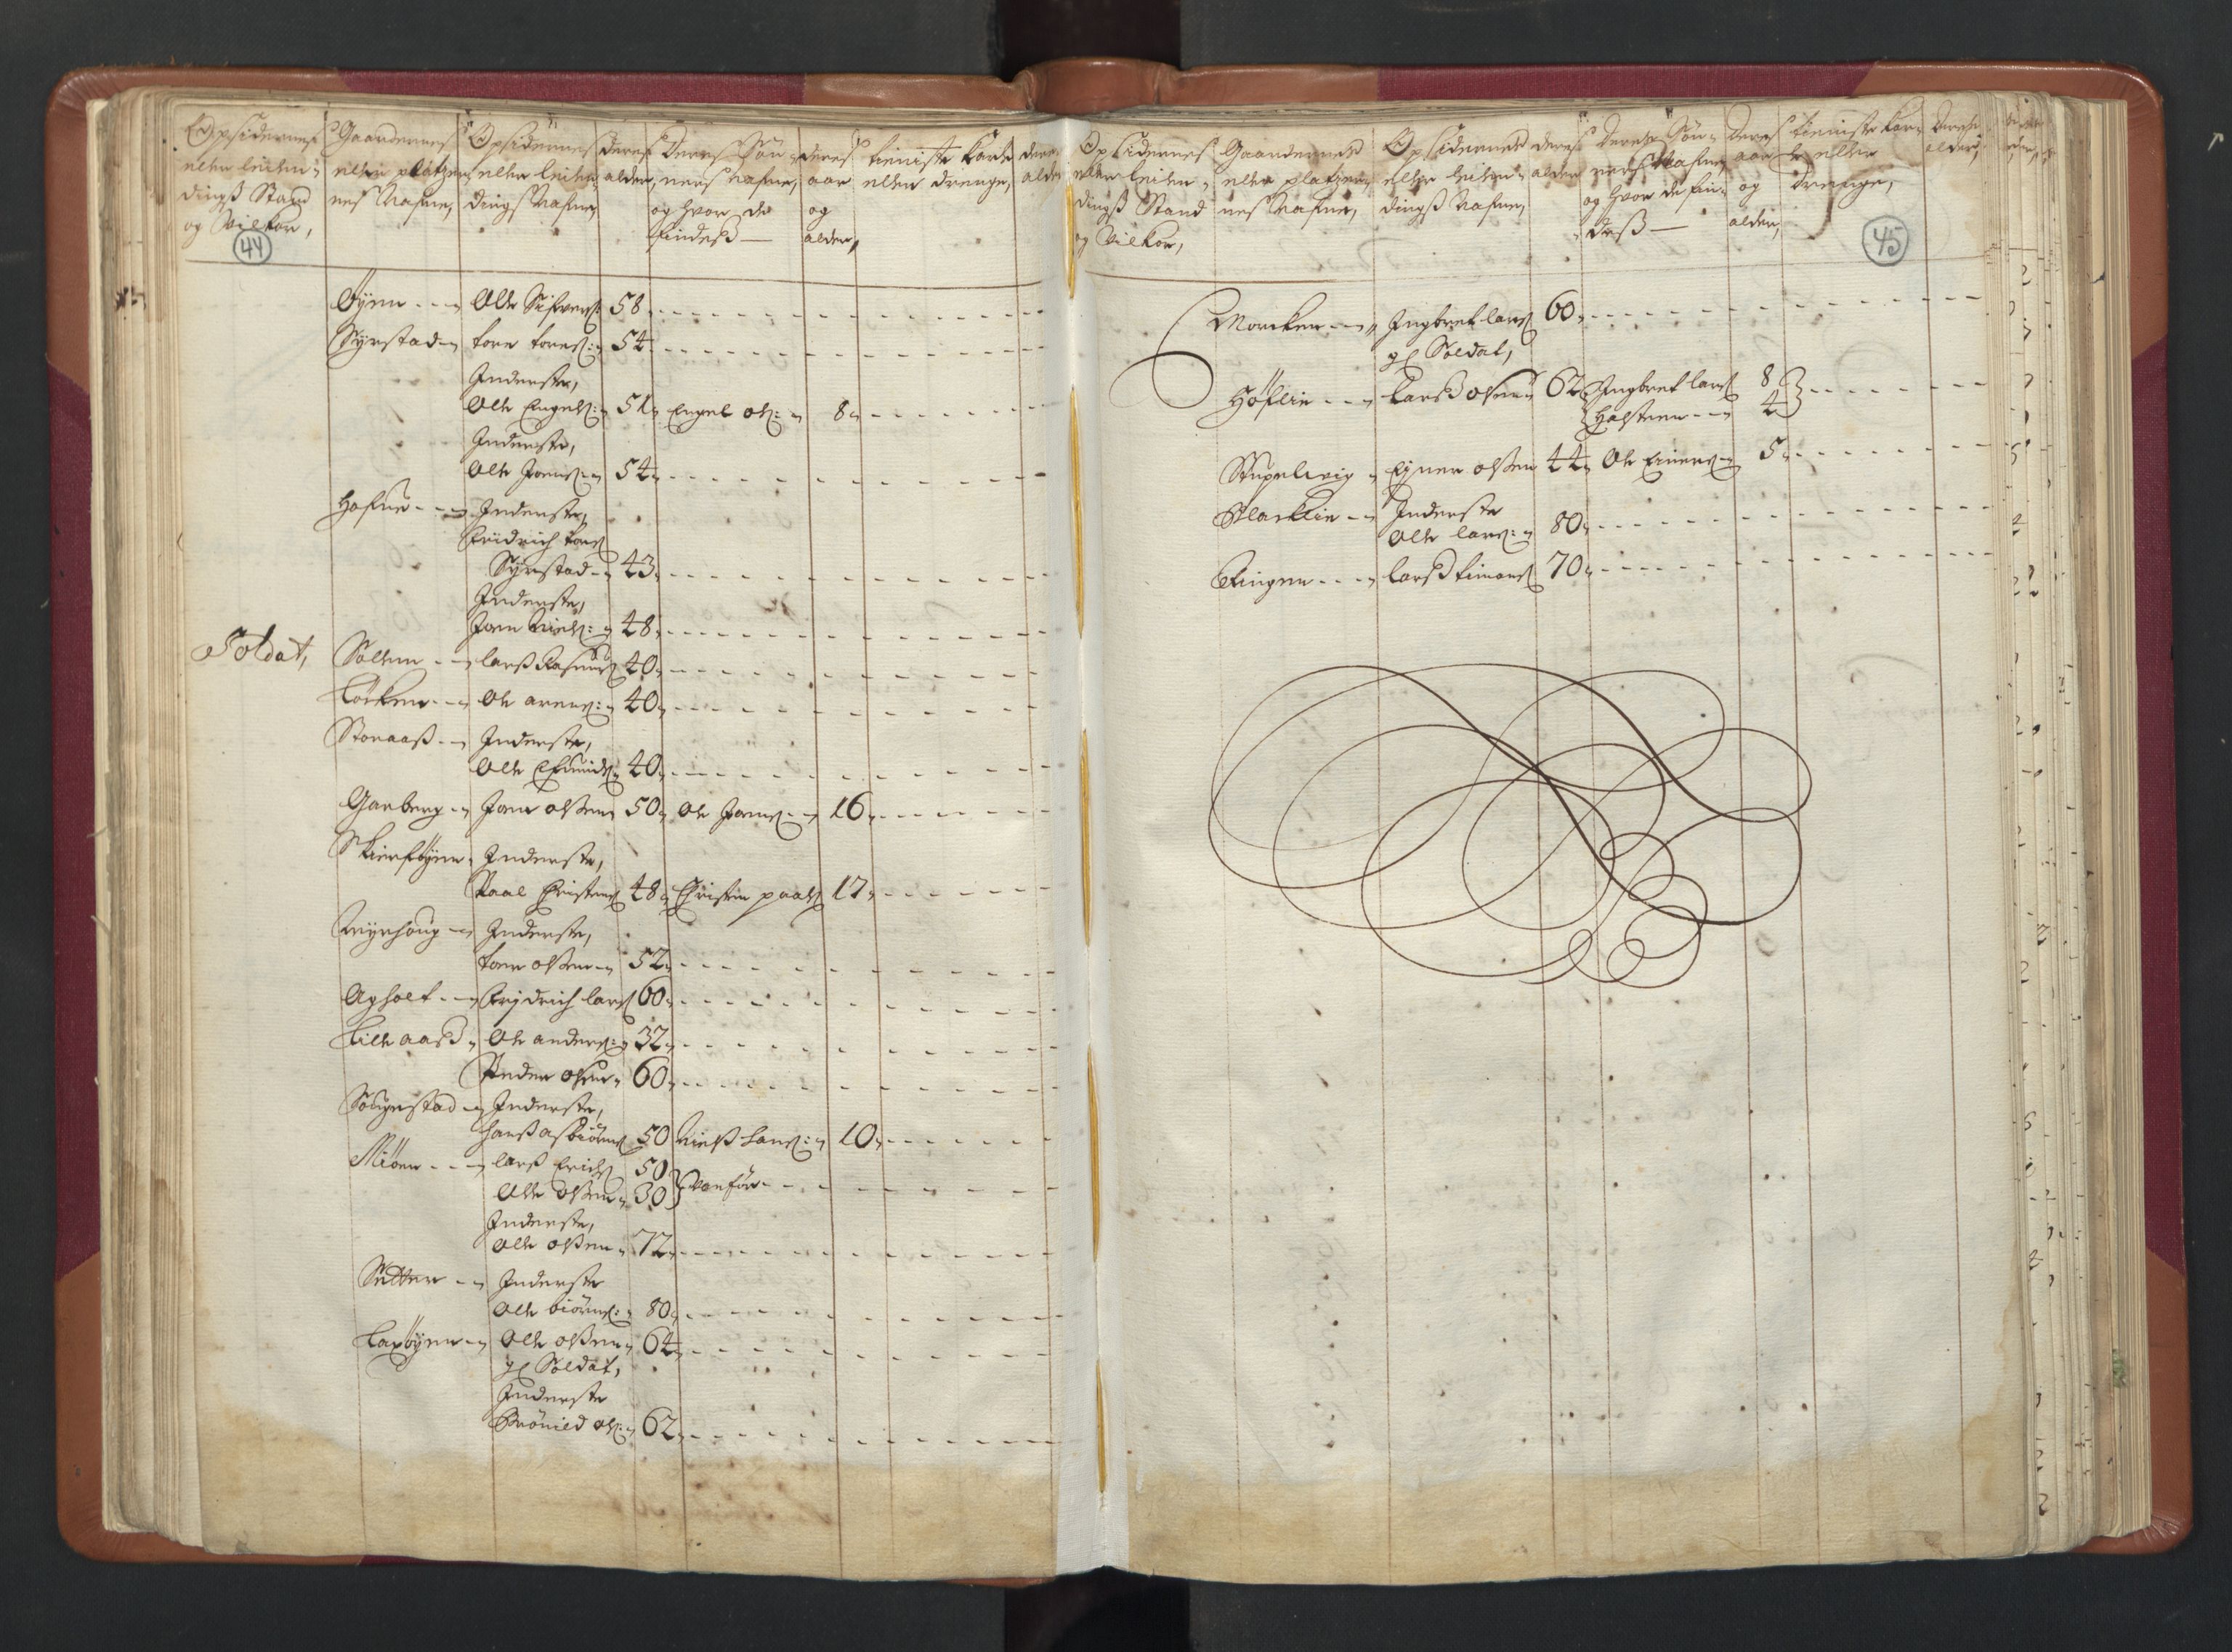 RA, Manntallet 1701, nr. 13: Orkdal fogderi og Gauldal fogderi med Røros kobberverk, 1701, s. 44-45